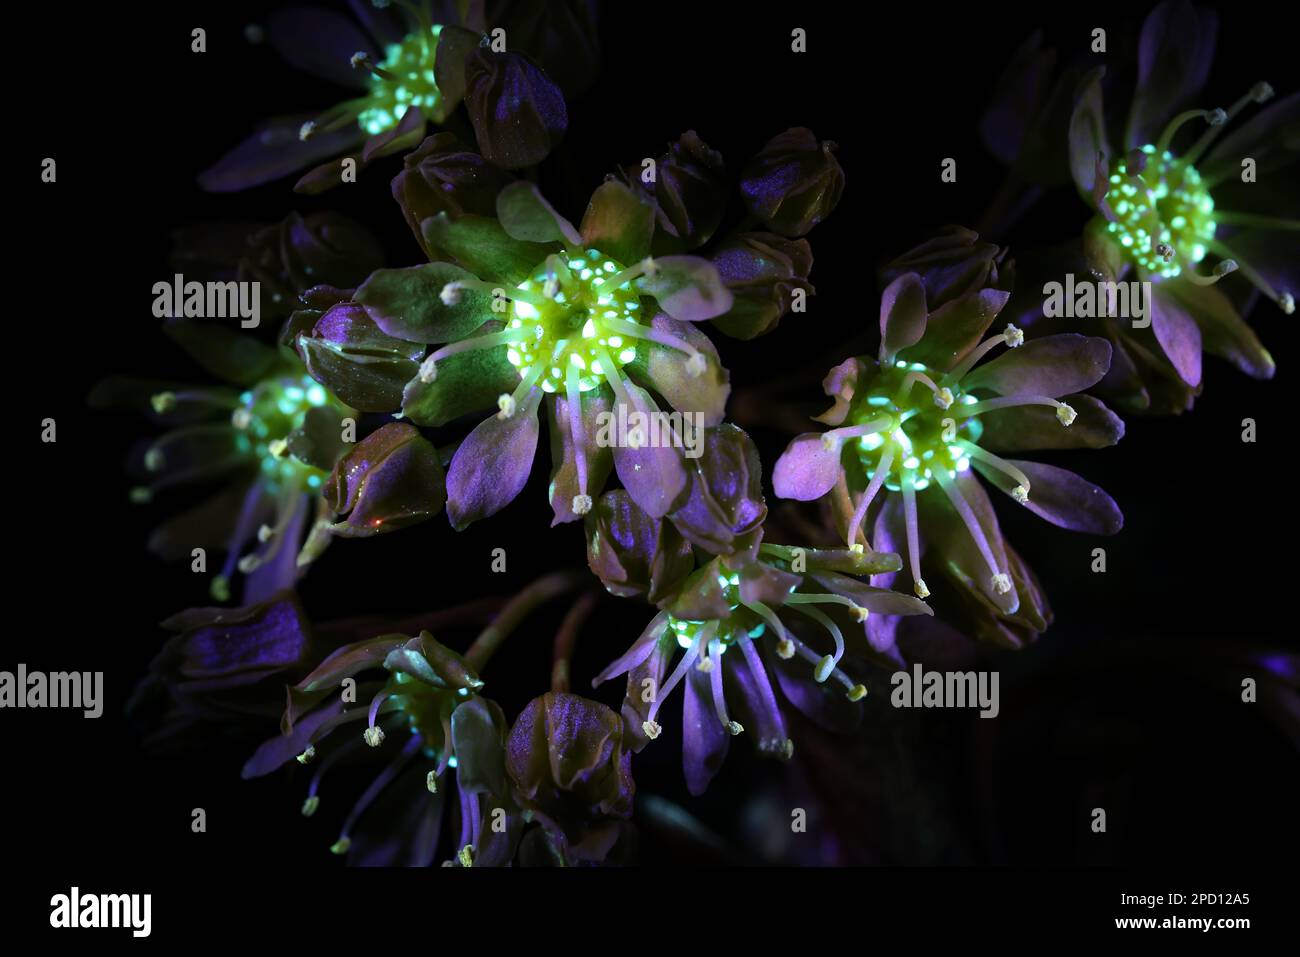 Fleurs fluorescentes de l'érable norvégien Acer platanoides, photographiées à la lumière ultraviolette (365 nm) Banque D'Images